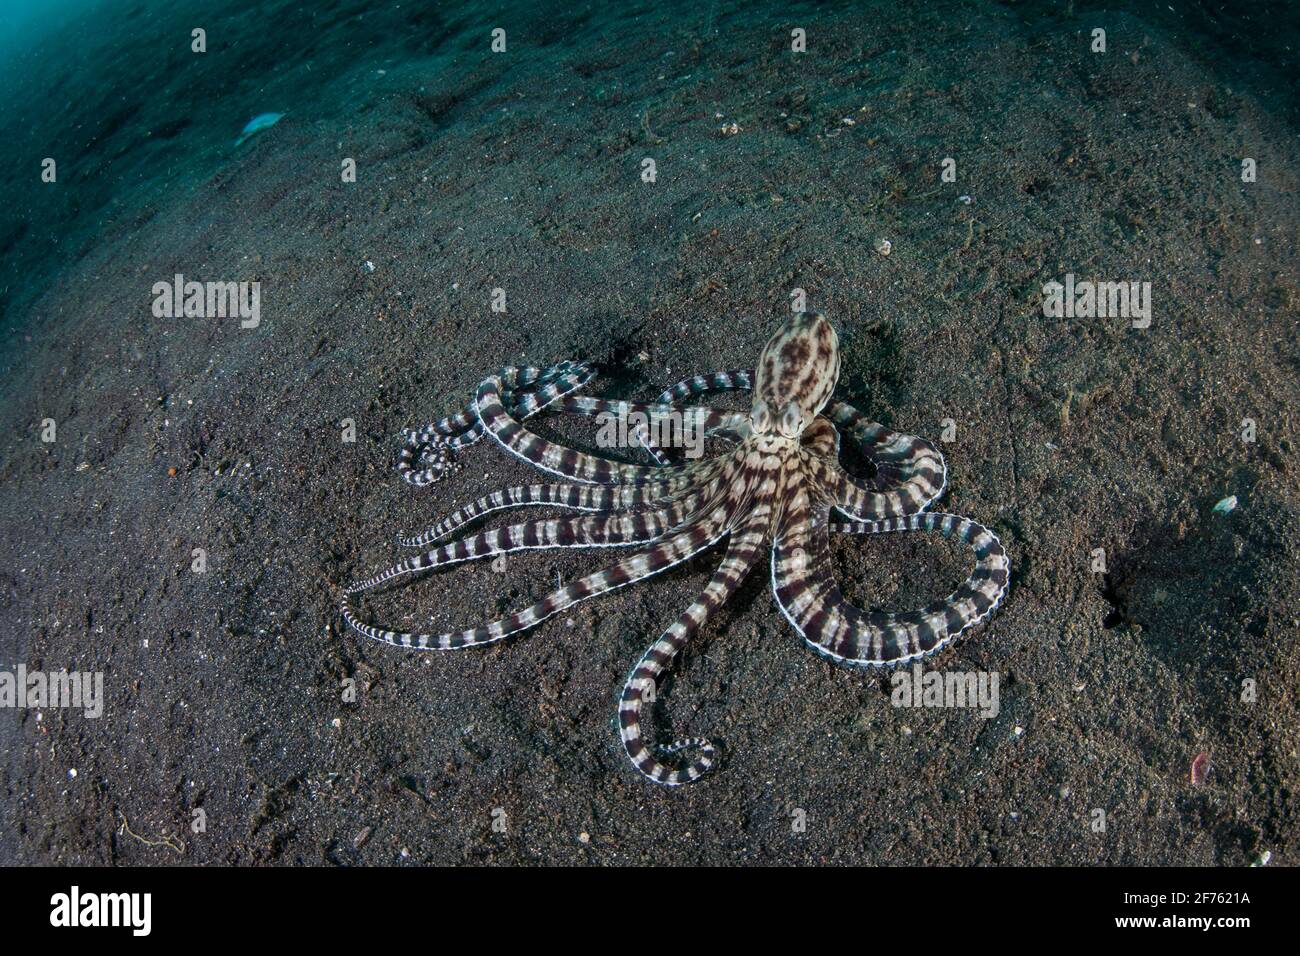 Ein imimischer Oktopus, der Thaumoctopus micus, krabbelt in der Lembeh Strait, Indonesien, über einen schwarzen Sandboden. Dieser Cprophoden imitiert andere Arten. Stockfoto